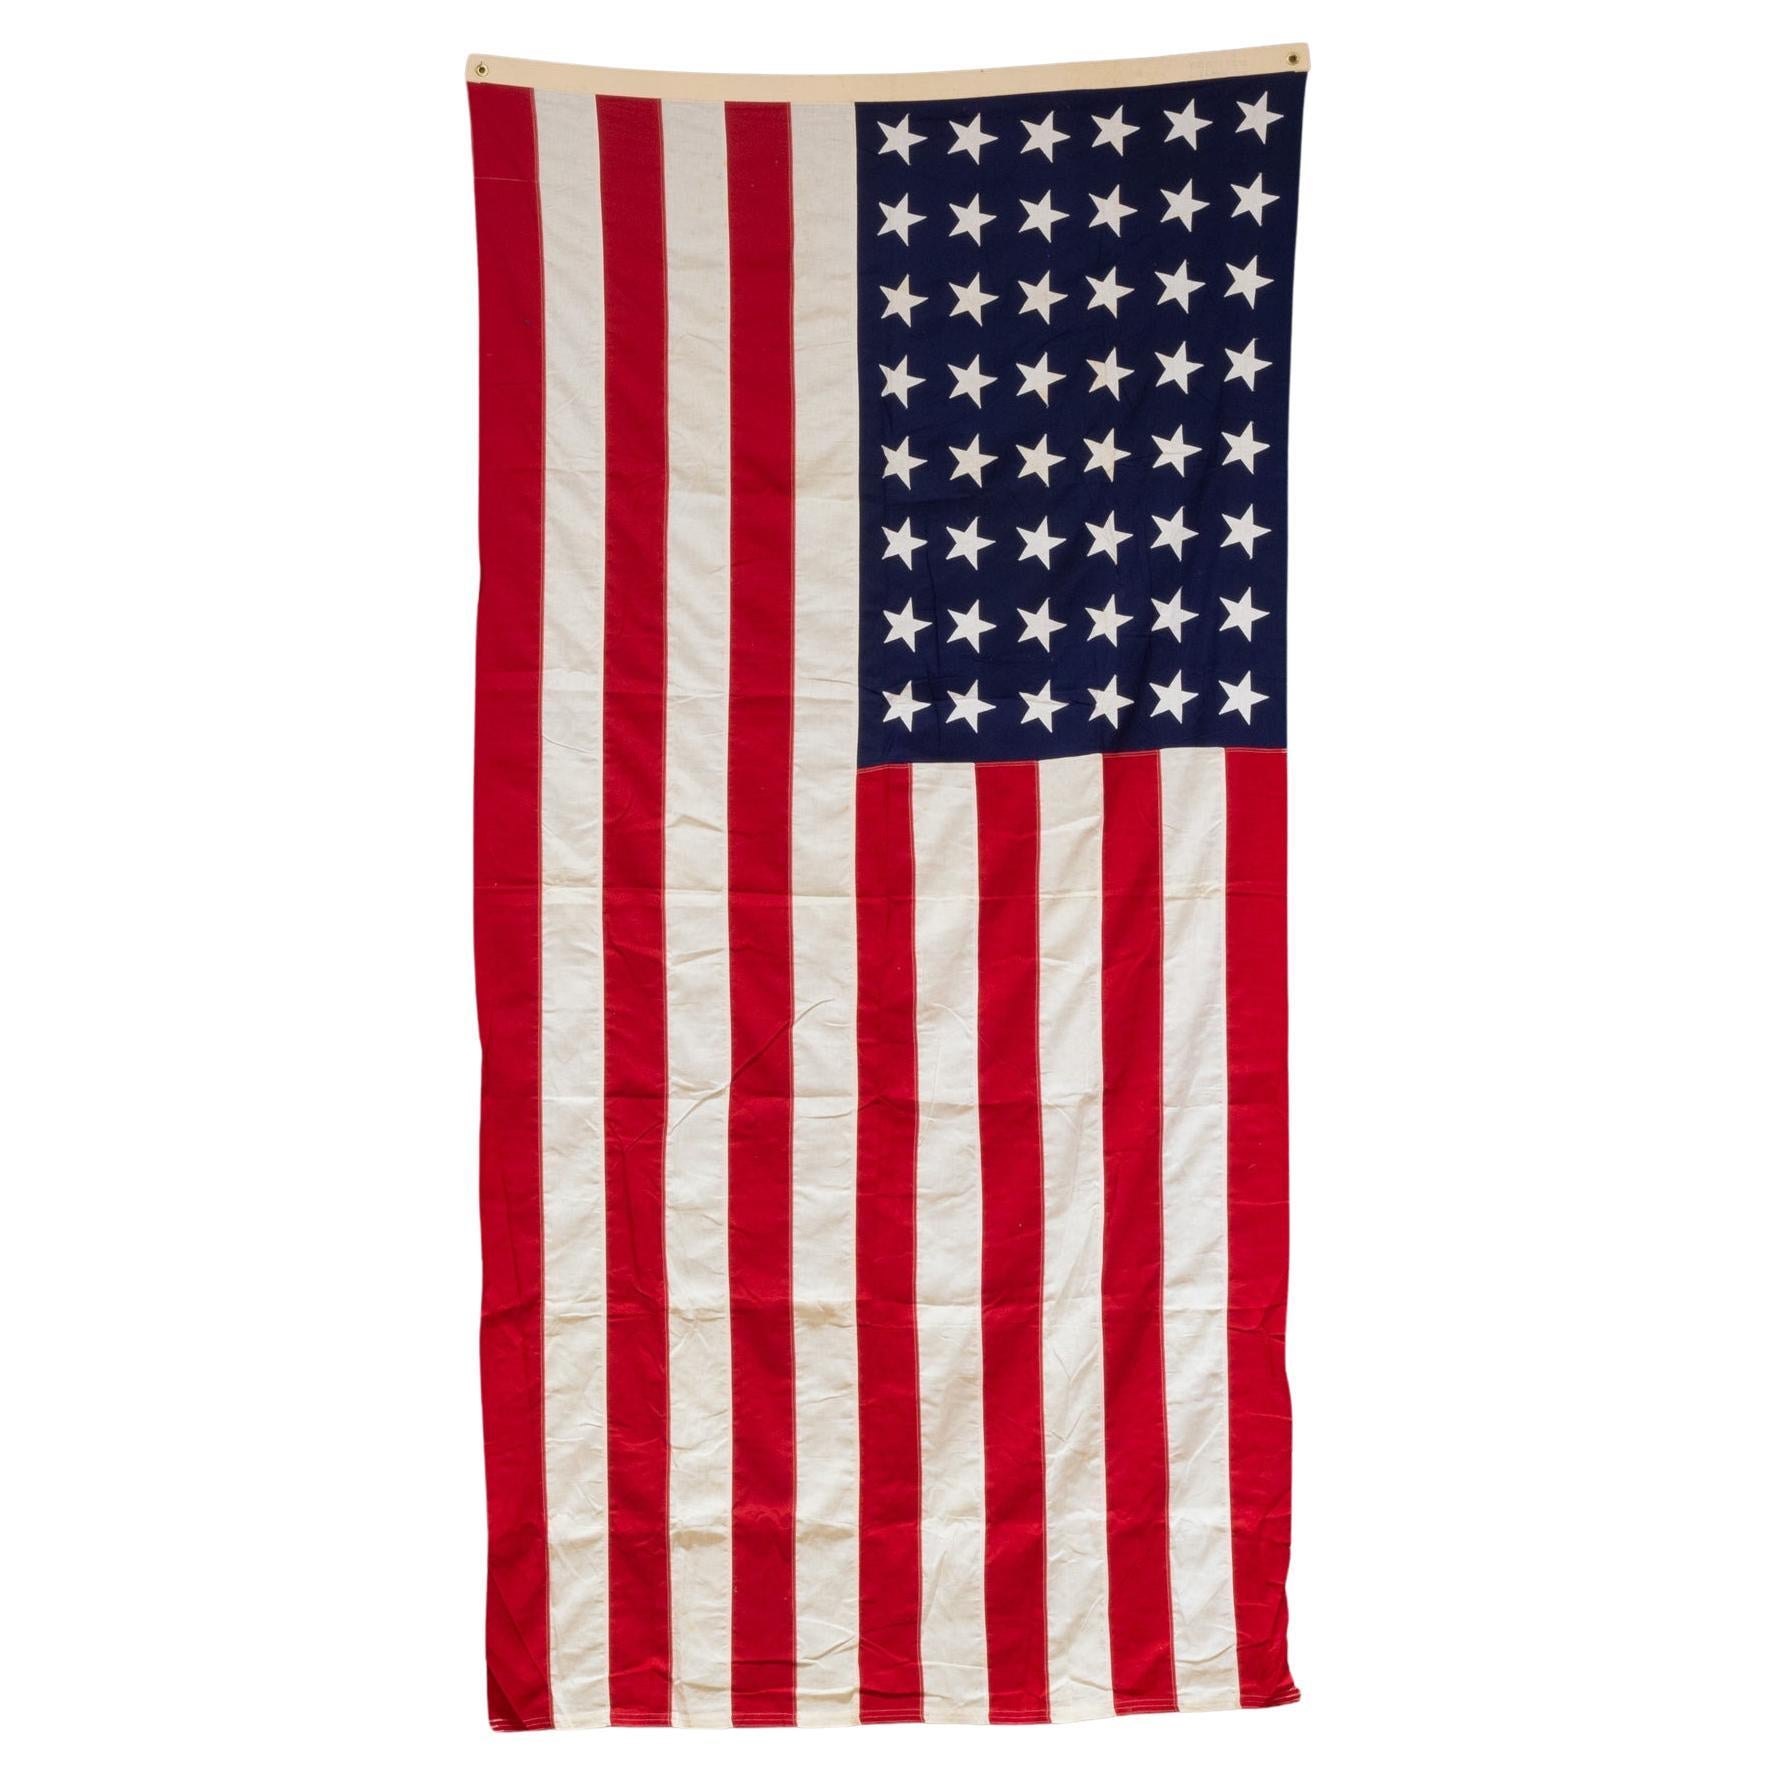 Grand drapeau américain Valley Forge avec 48 étoiles, vers 1940-1950, expédition gratuite en vente